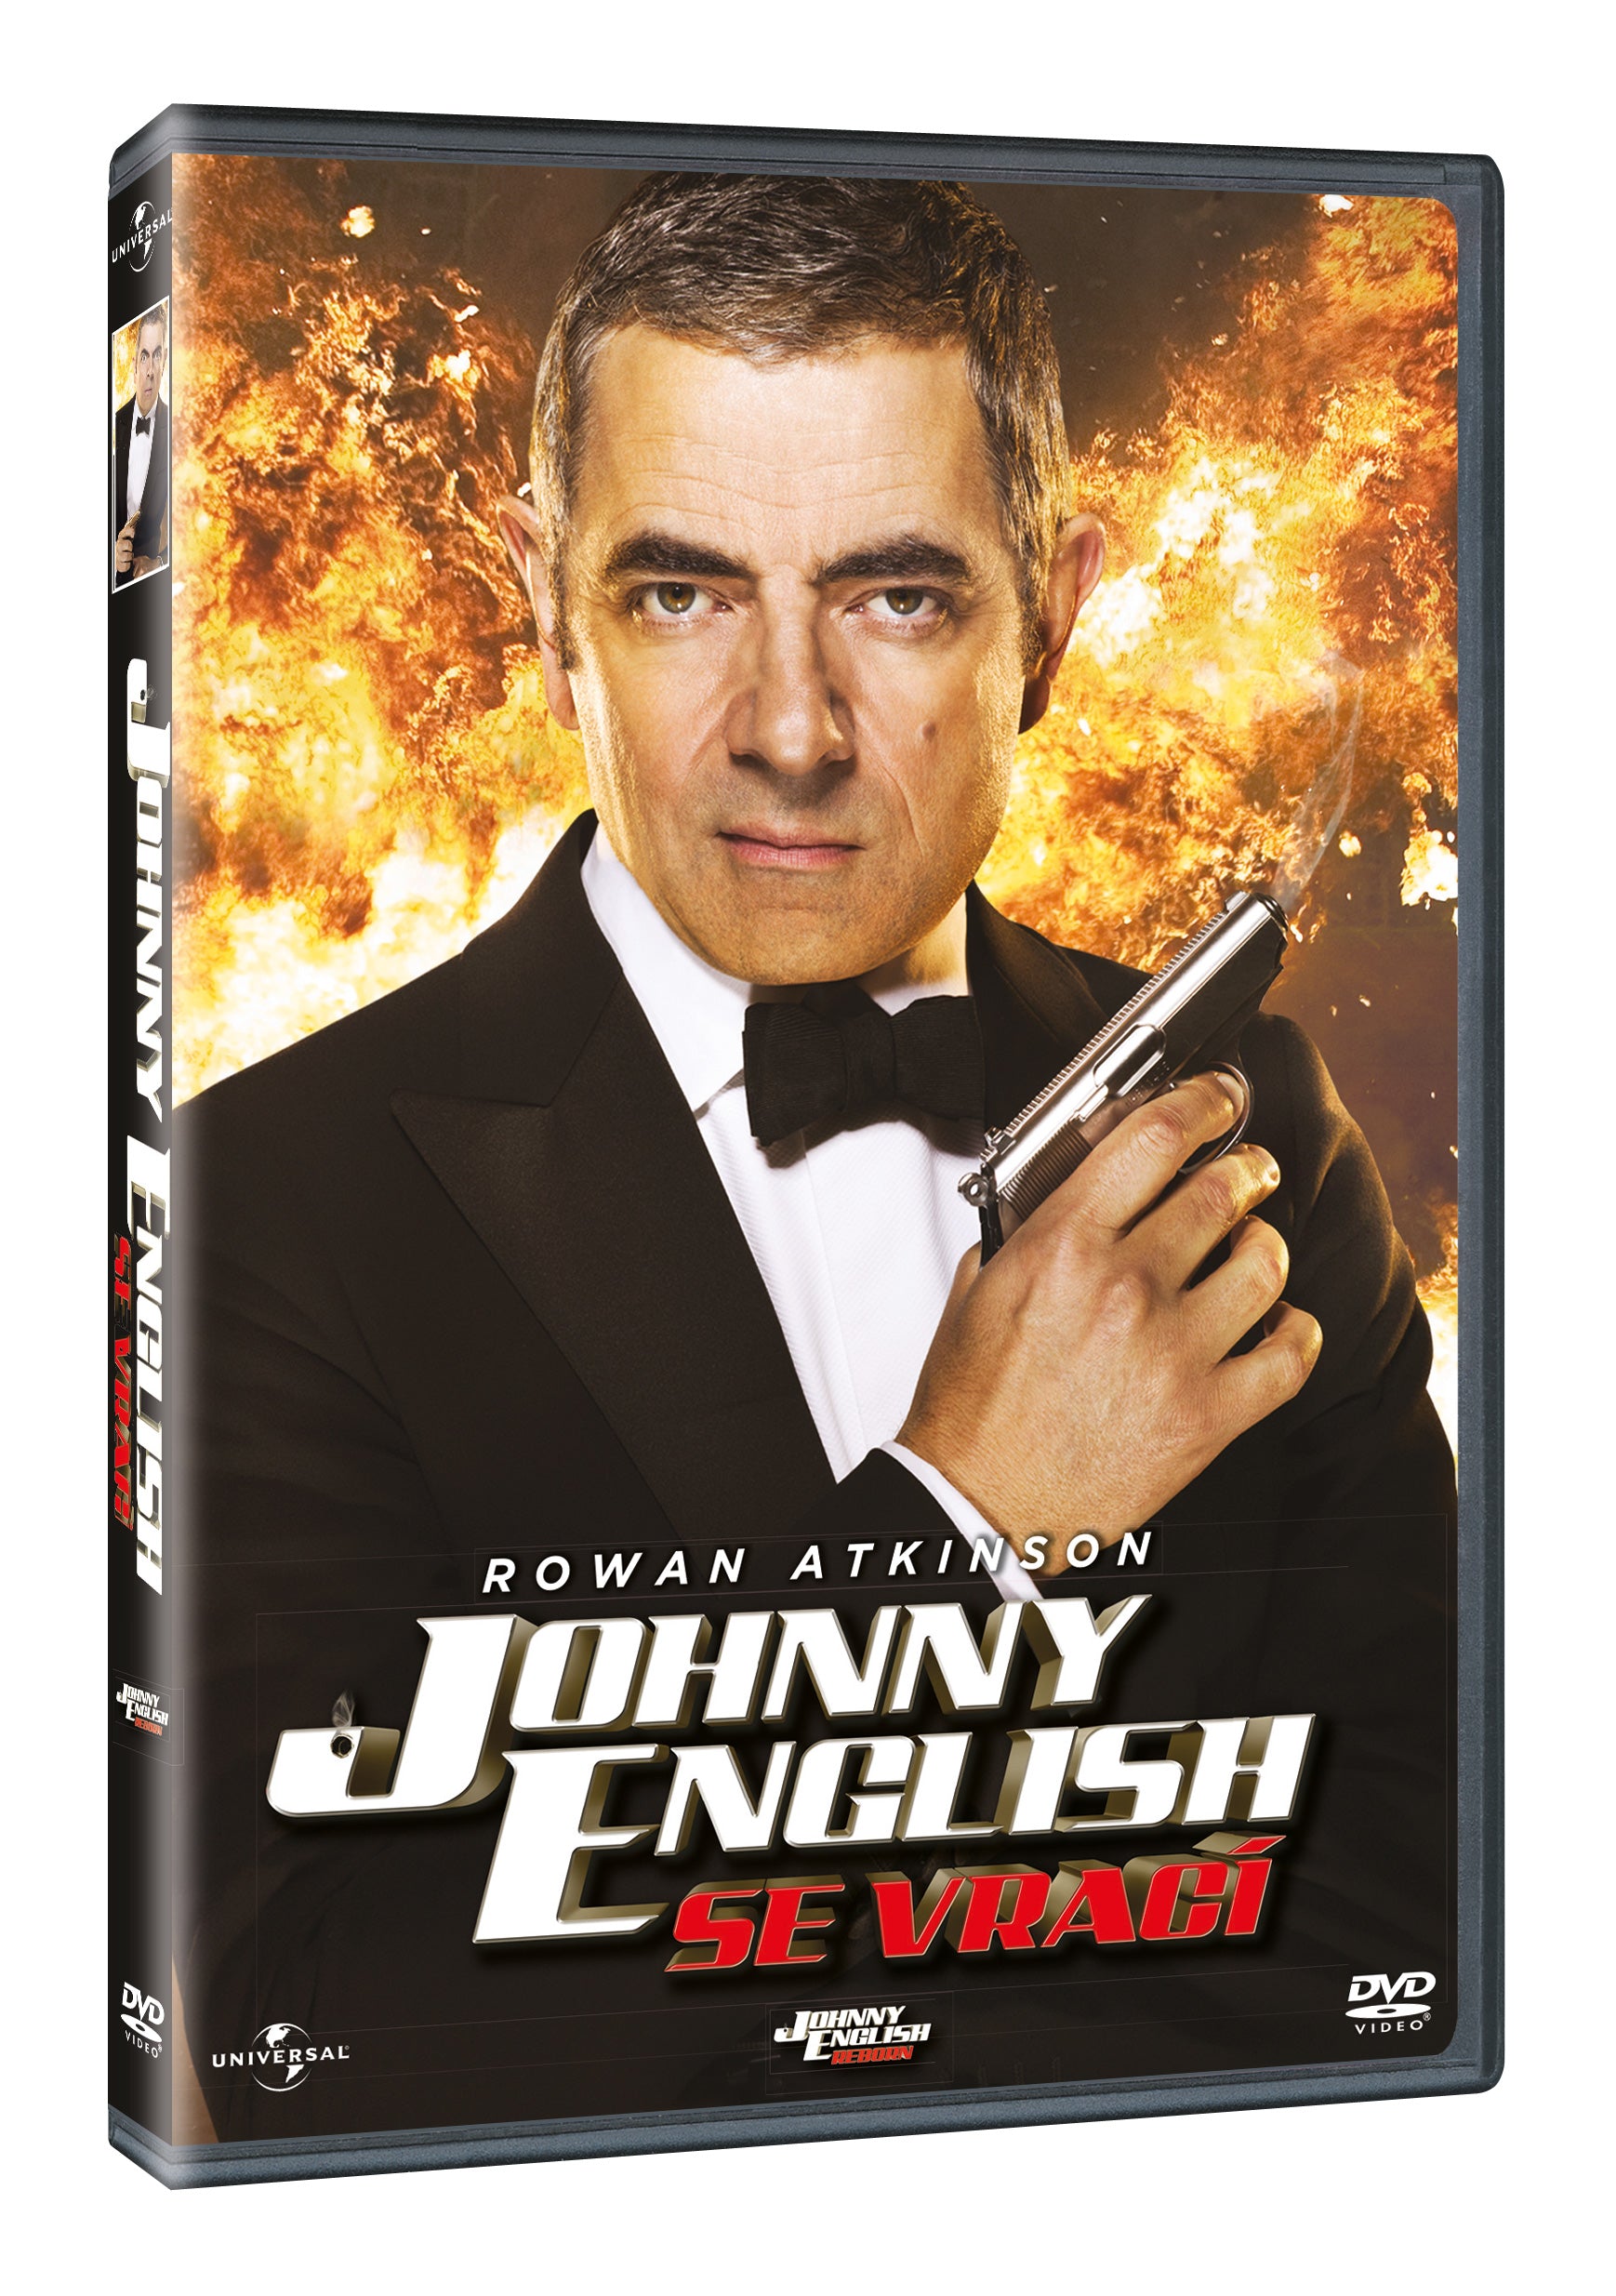 Johnny English erscheint auf DVD / Johnny English Reborn